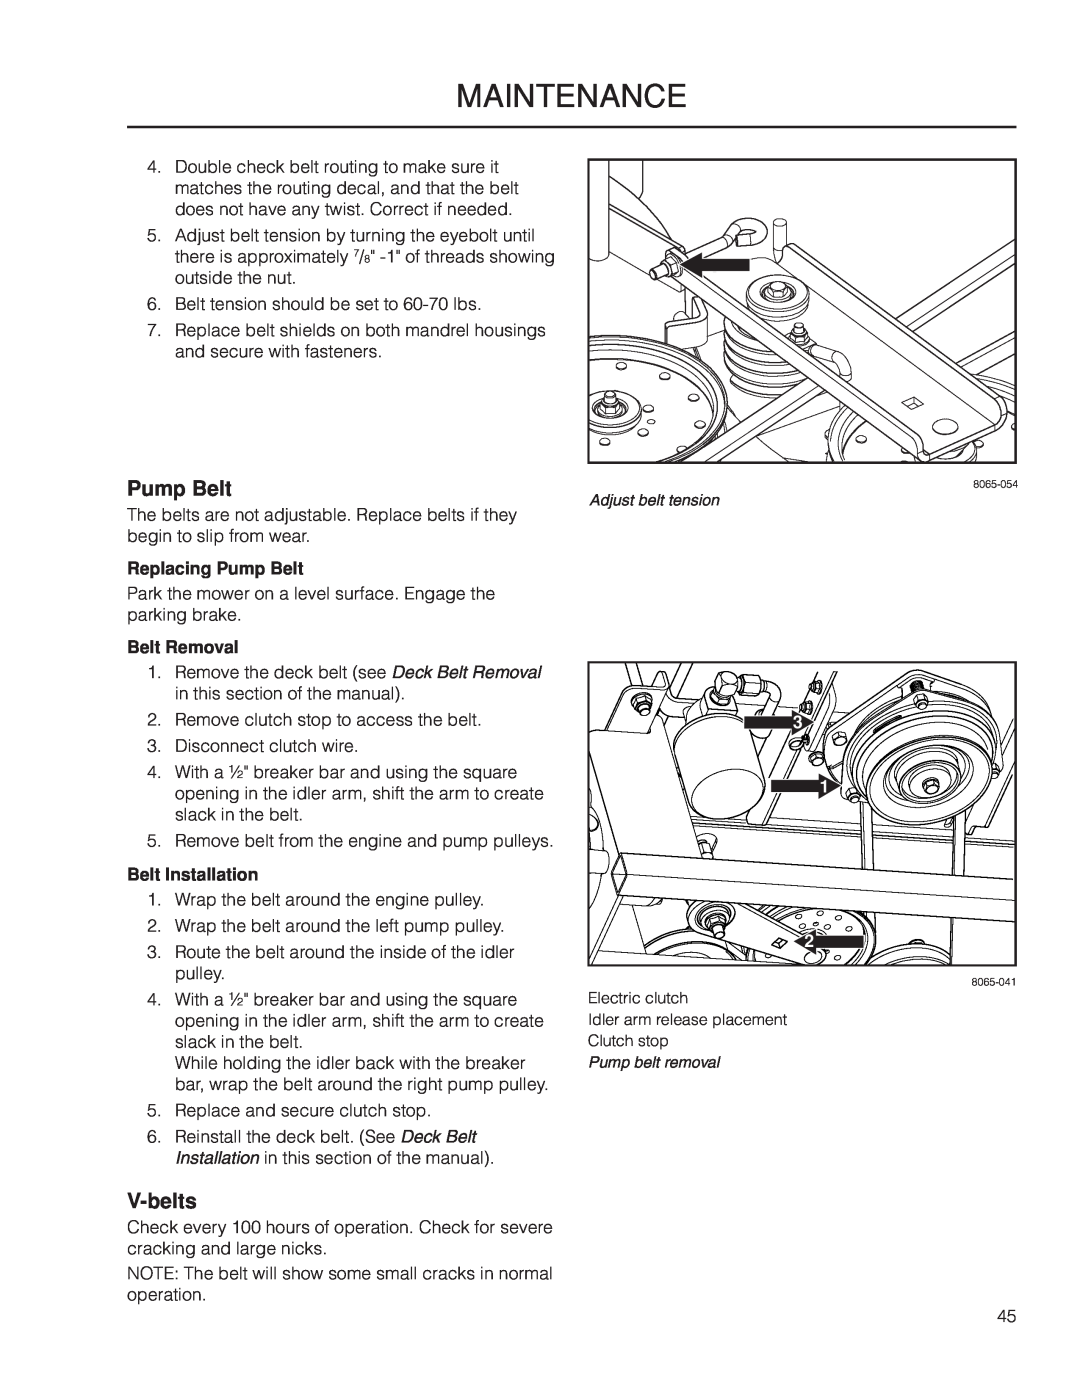 Yazoo/Kees ZPKW5426 manual V-belts, Replacing Pump Belt, Belt Removal, Belt Installation, maintenance 